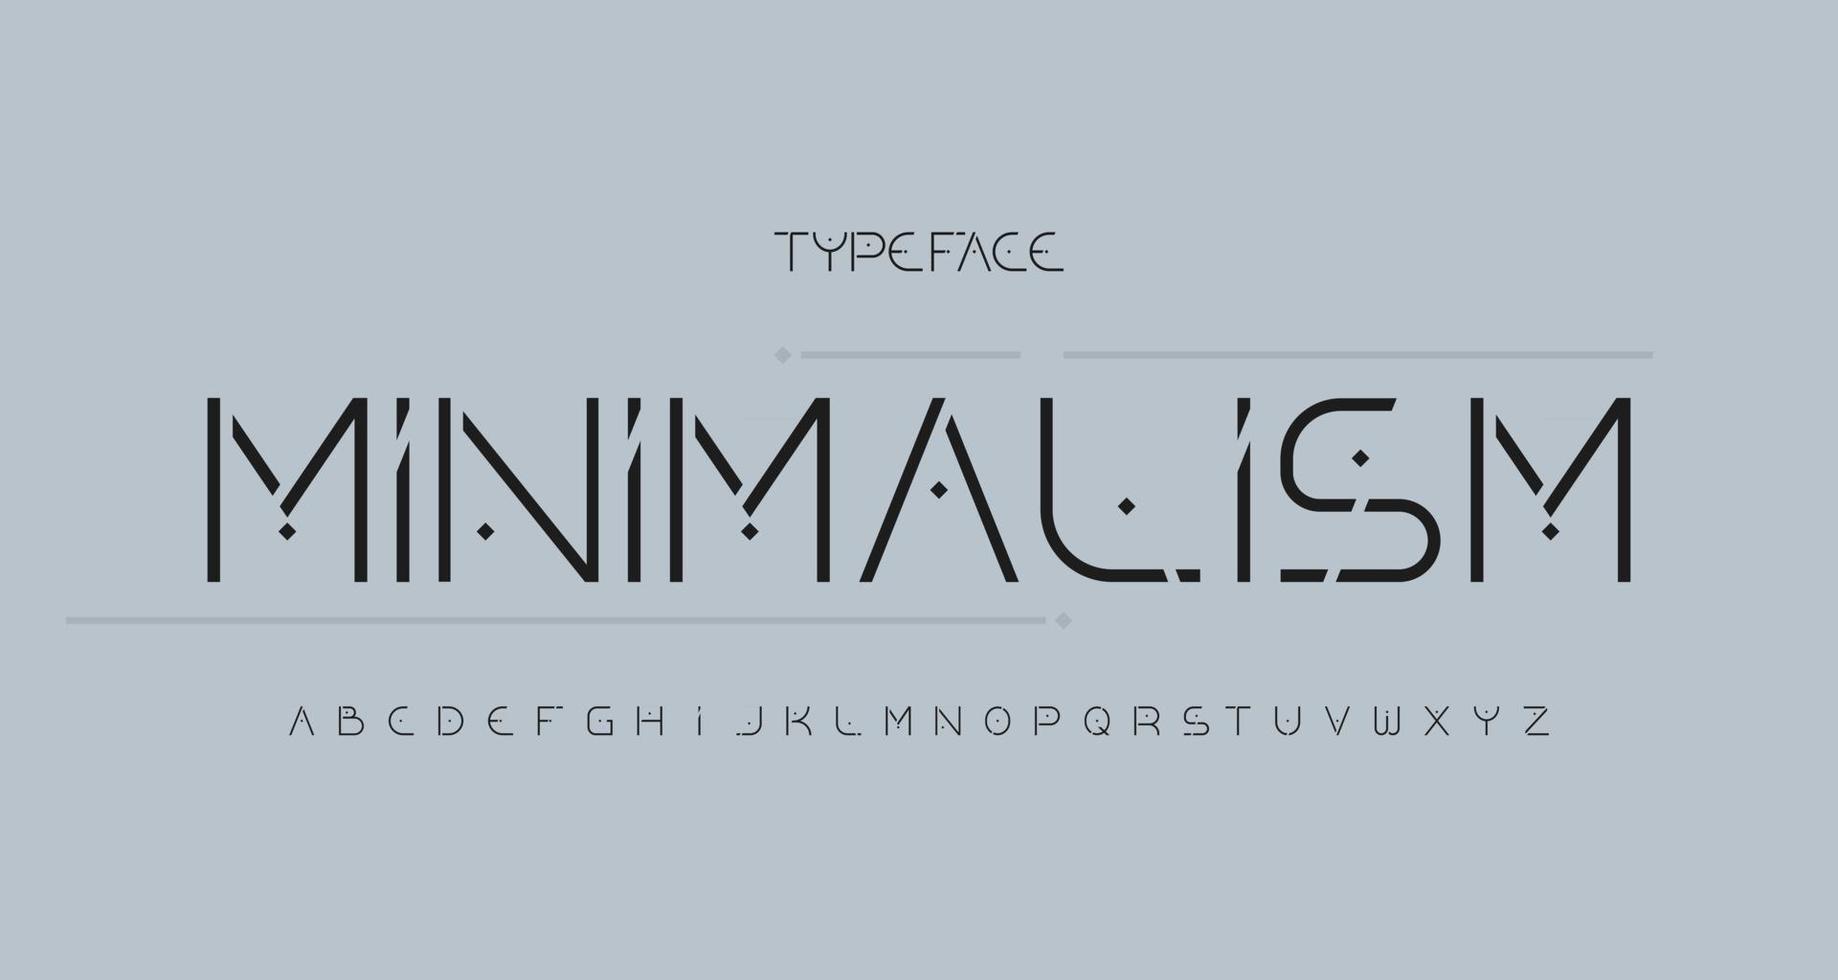 carattere sans serif elegante e moderno alfabeto vettore